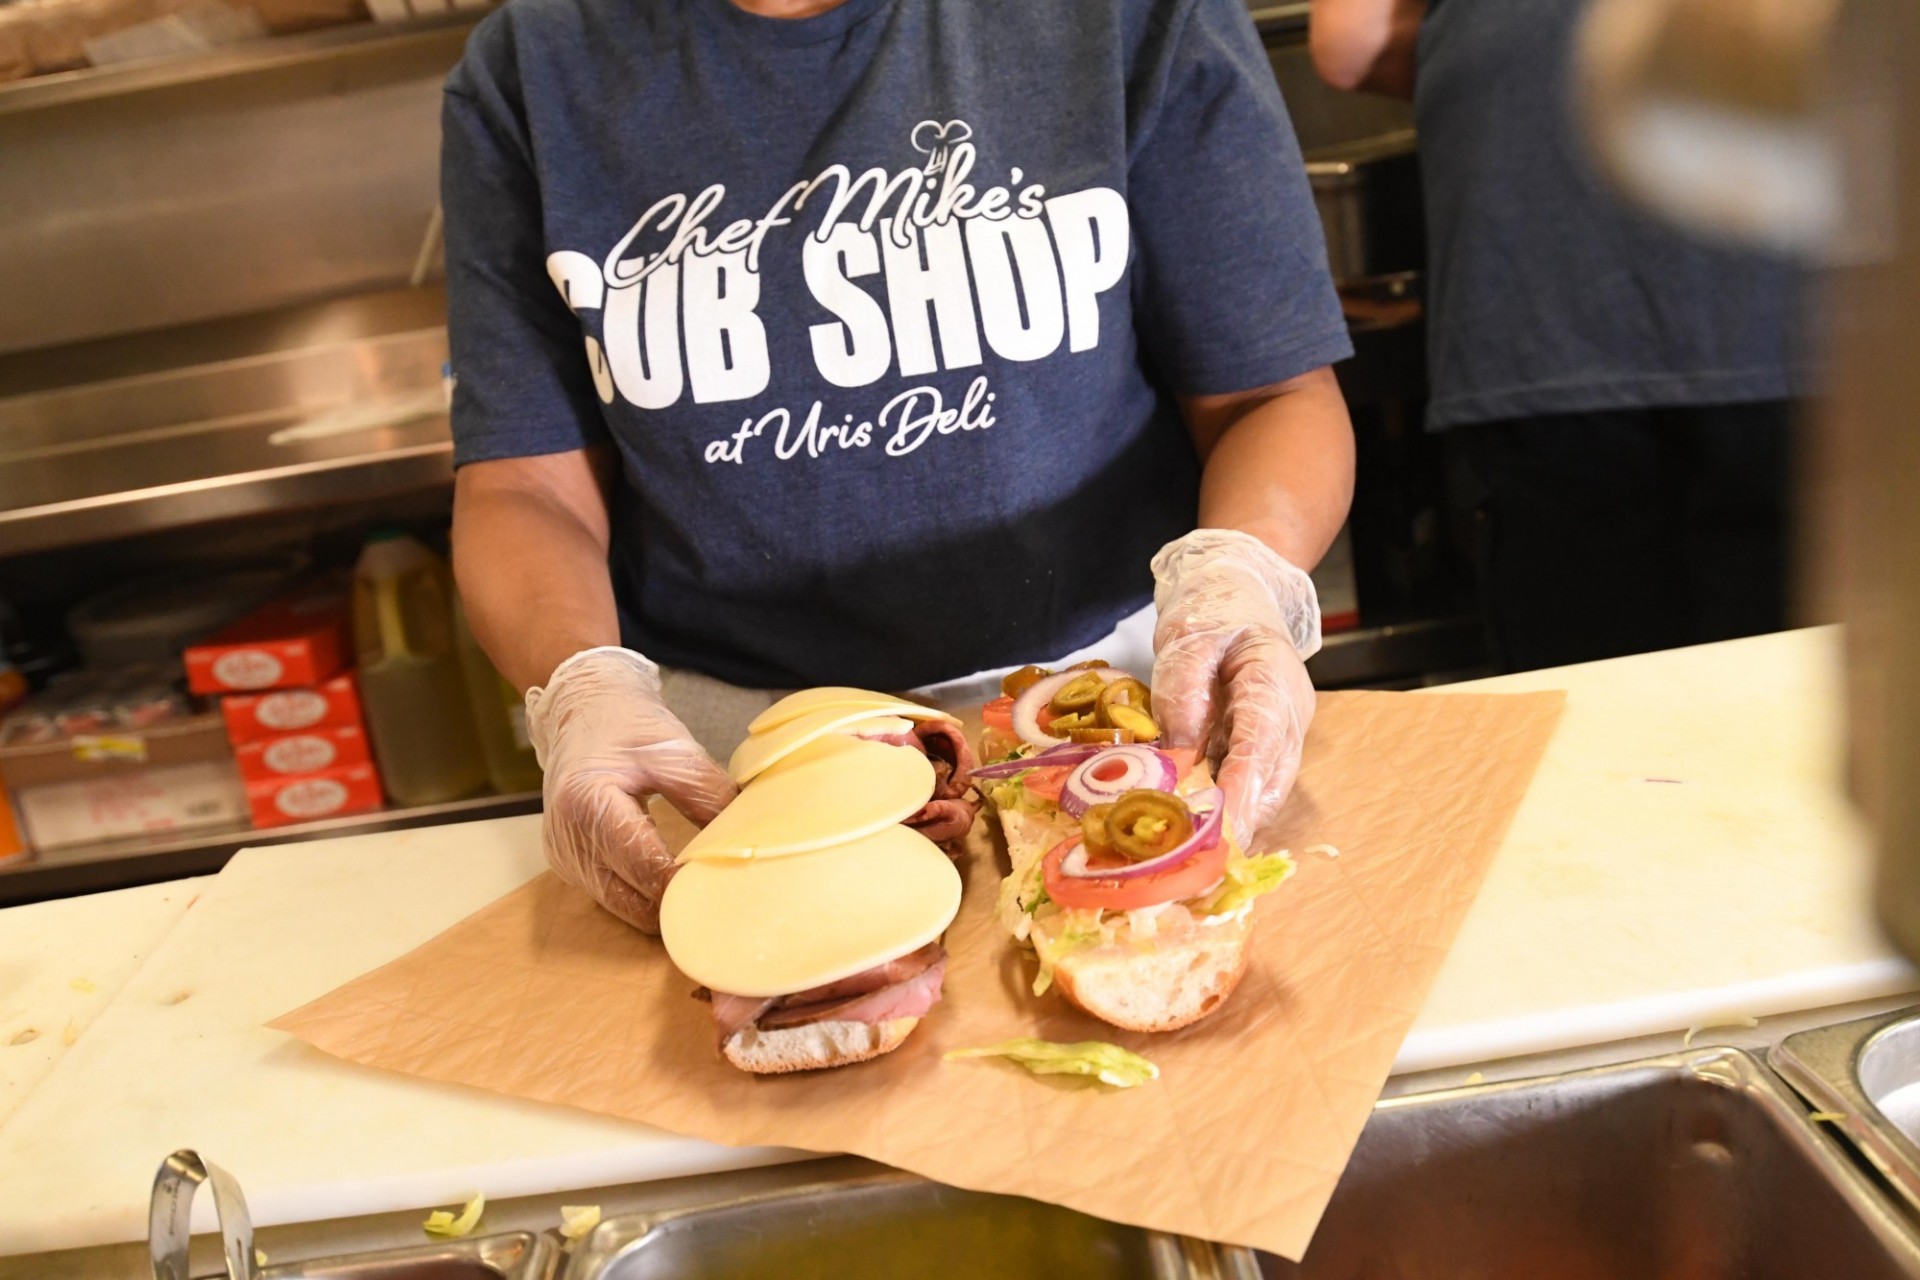 Staff member preparing a sandwich